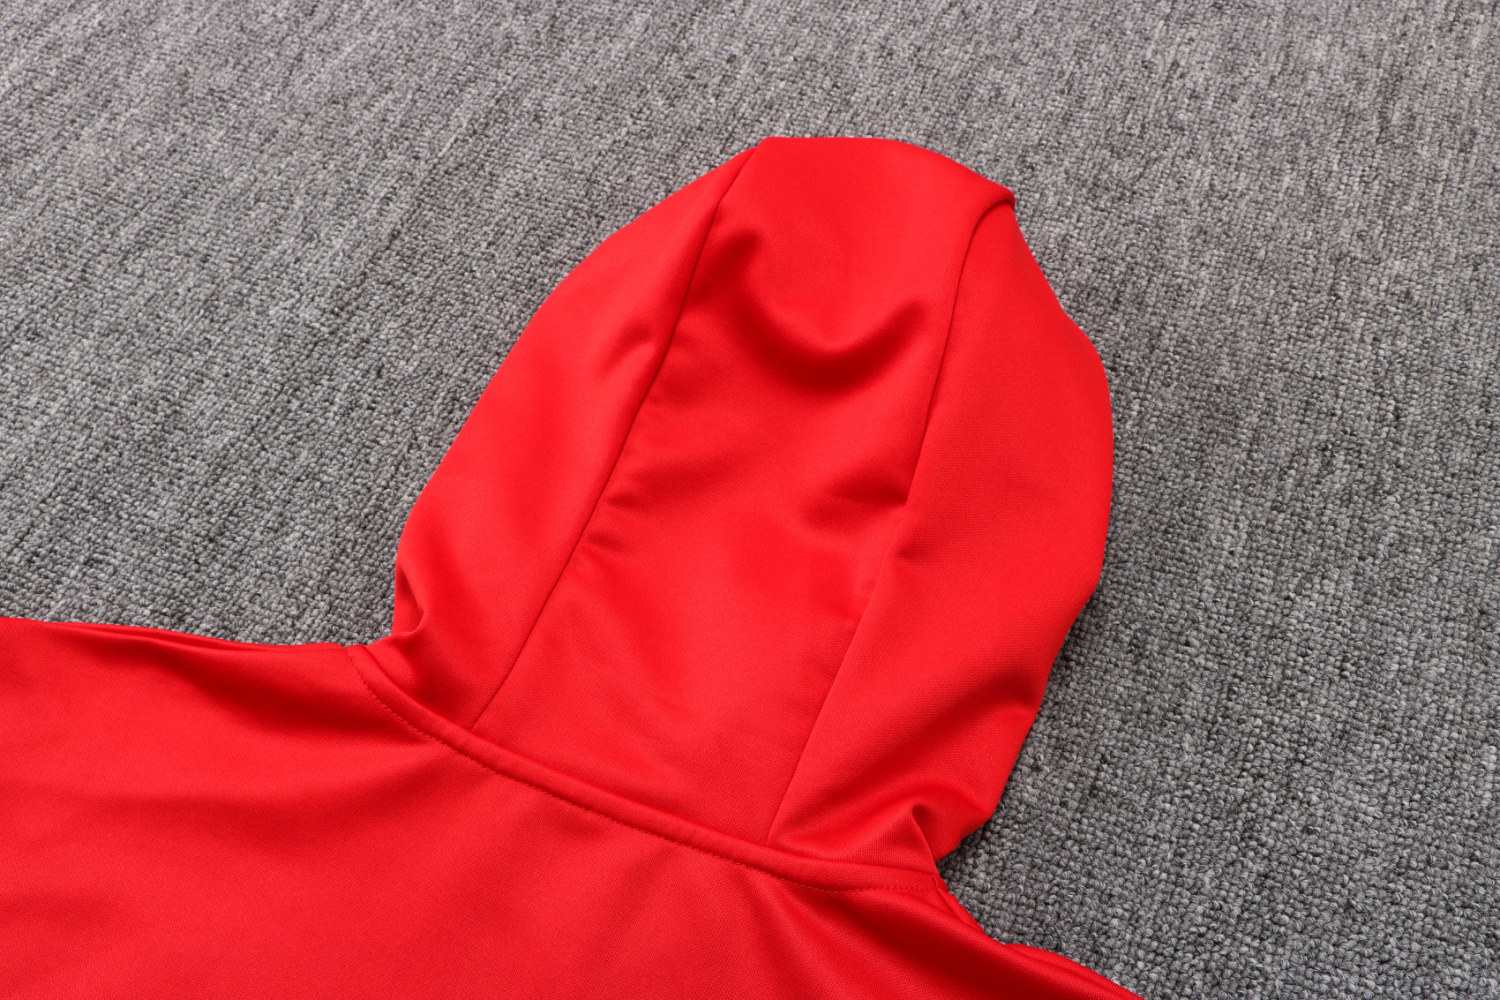 Men's PSG Hoodie Red Training Suit Jacket + Pants 22/23